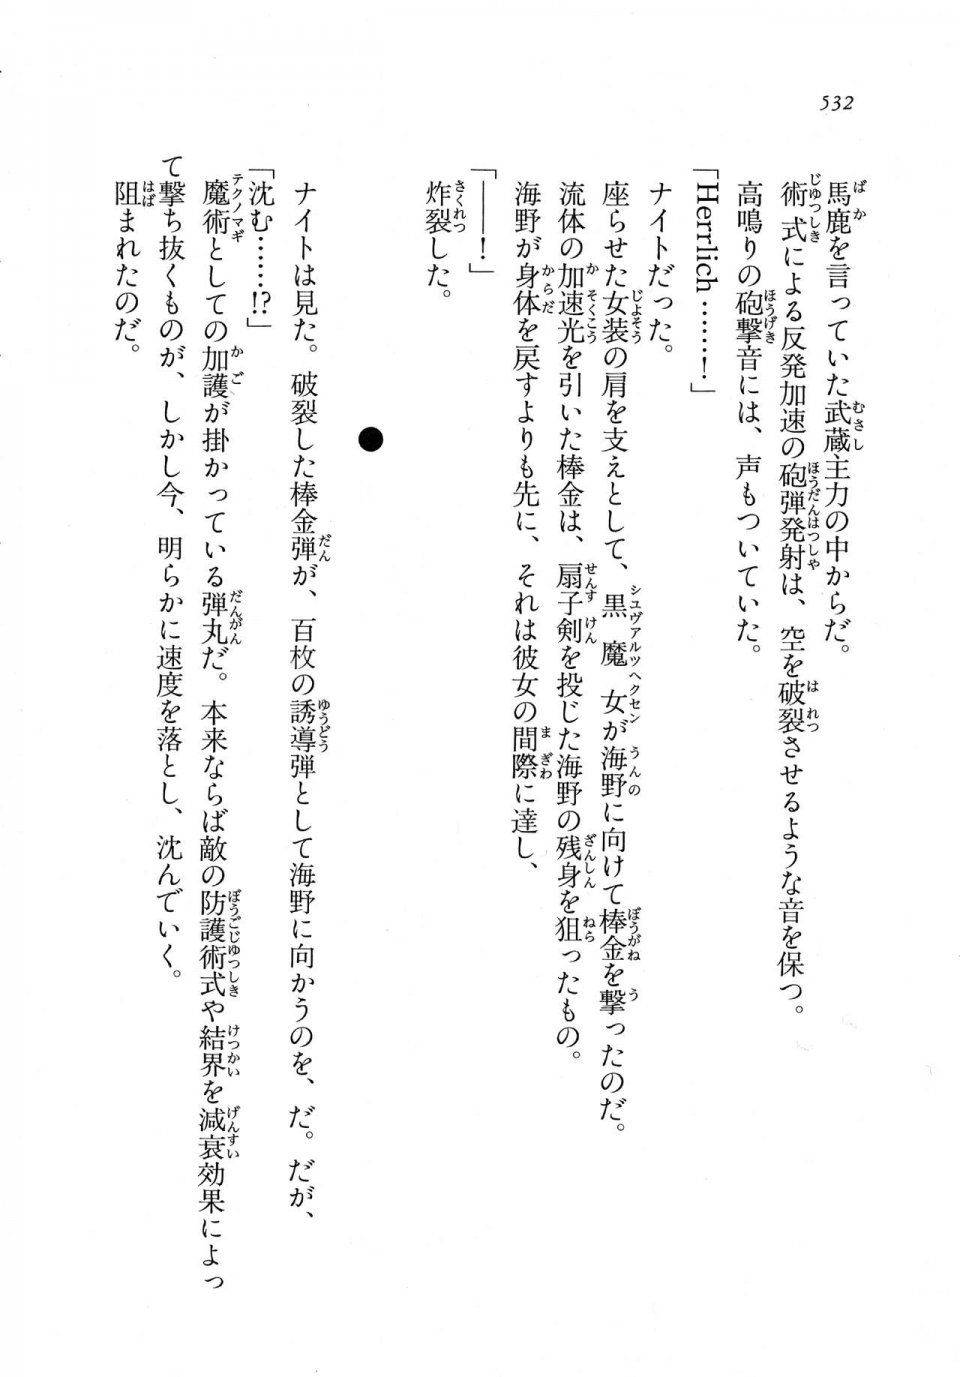 Kyoukai Senjou no Horizon LN Vol 11(5A) - Photo #532